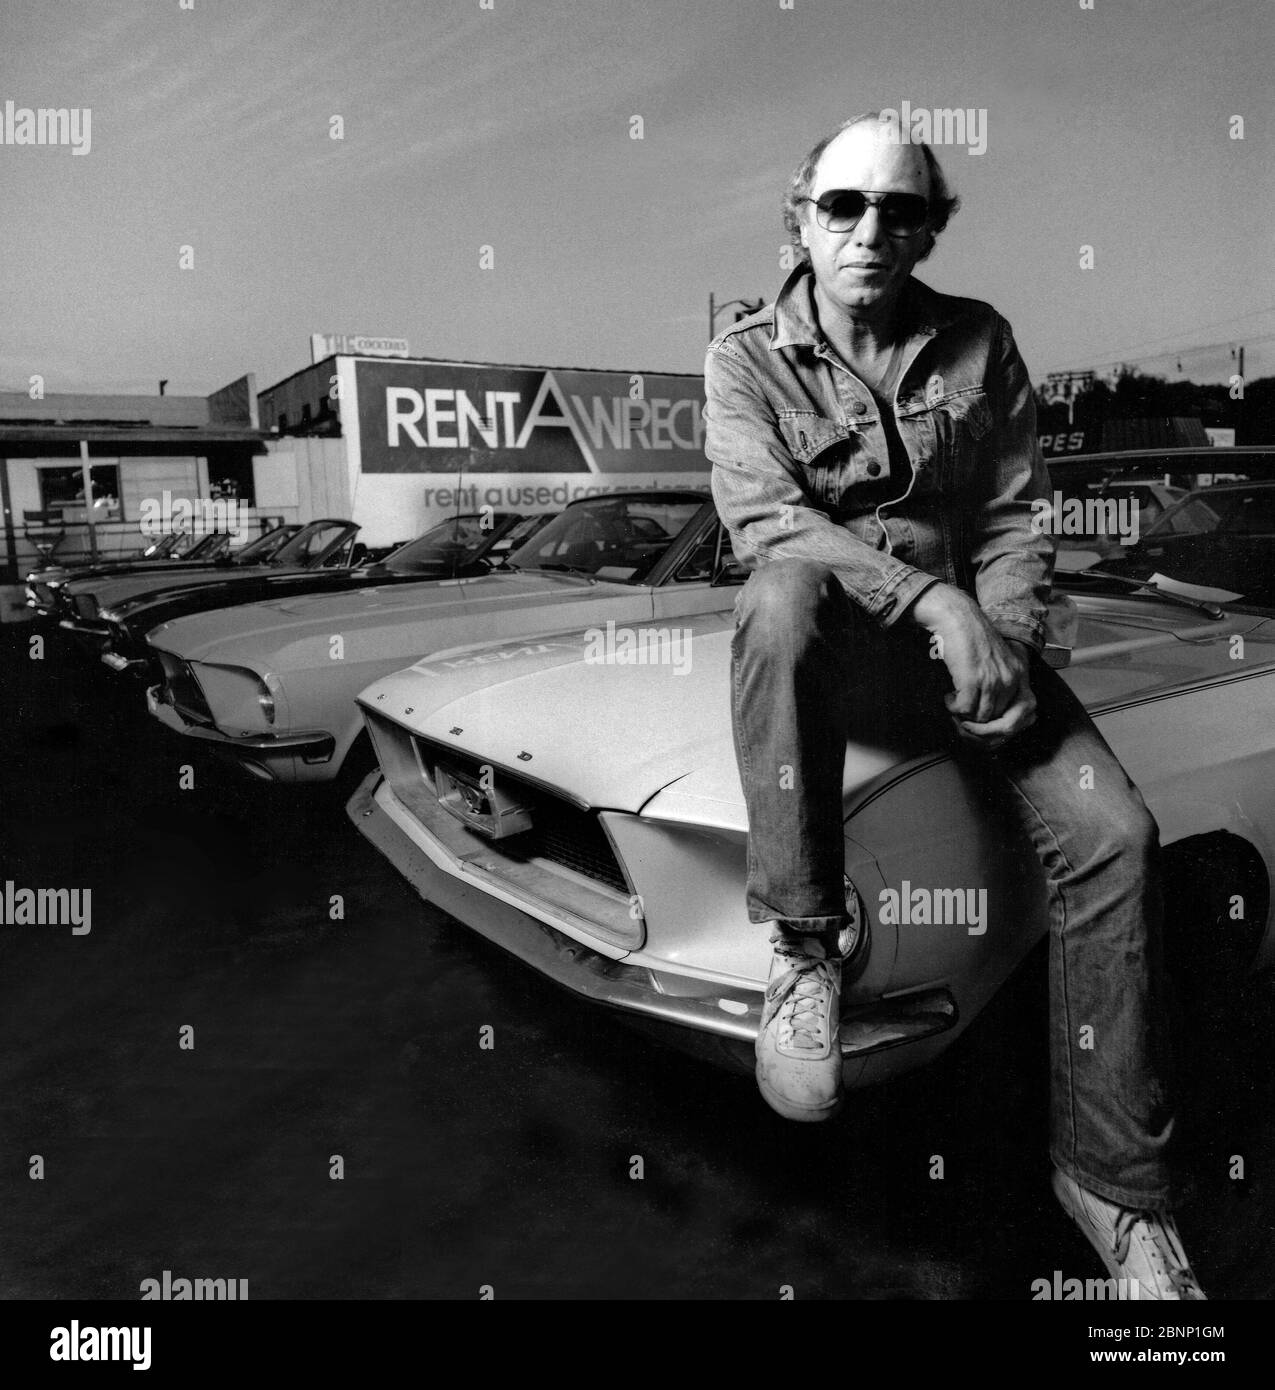 Posierte und beleuchtete Schwarz-Weiß-Porträt von Dave Schwartz, dem Gründer und ursprünglichen Eigentümer von Rent A Wreck Autovermietung in West Los Angeles, CA Stockfoto